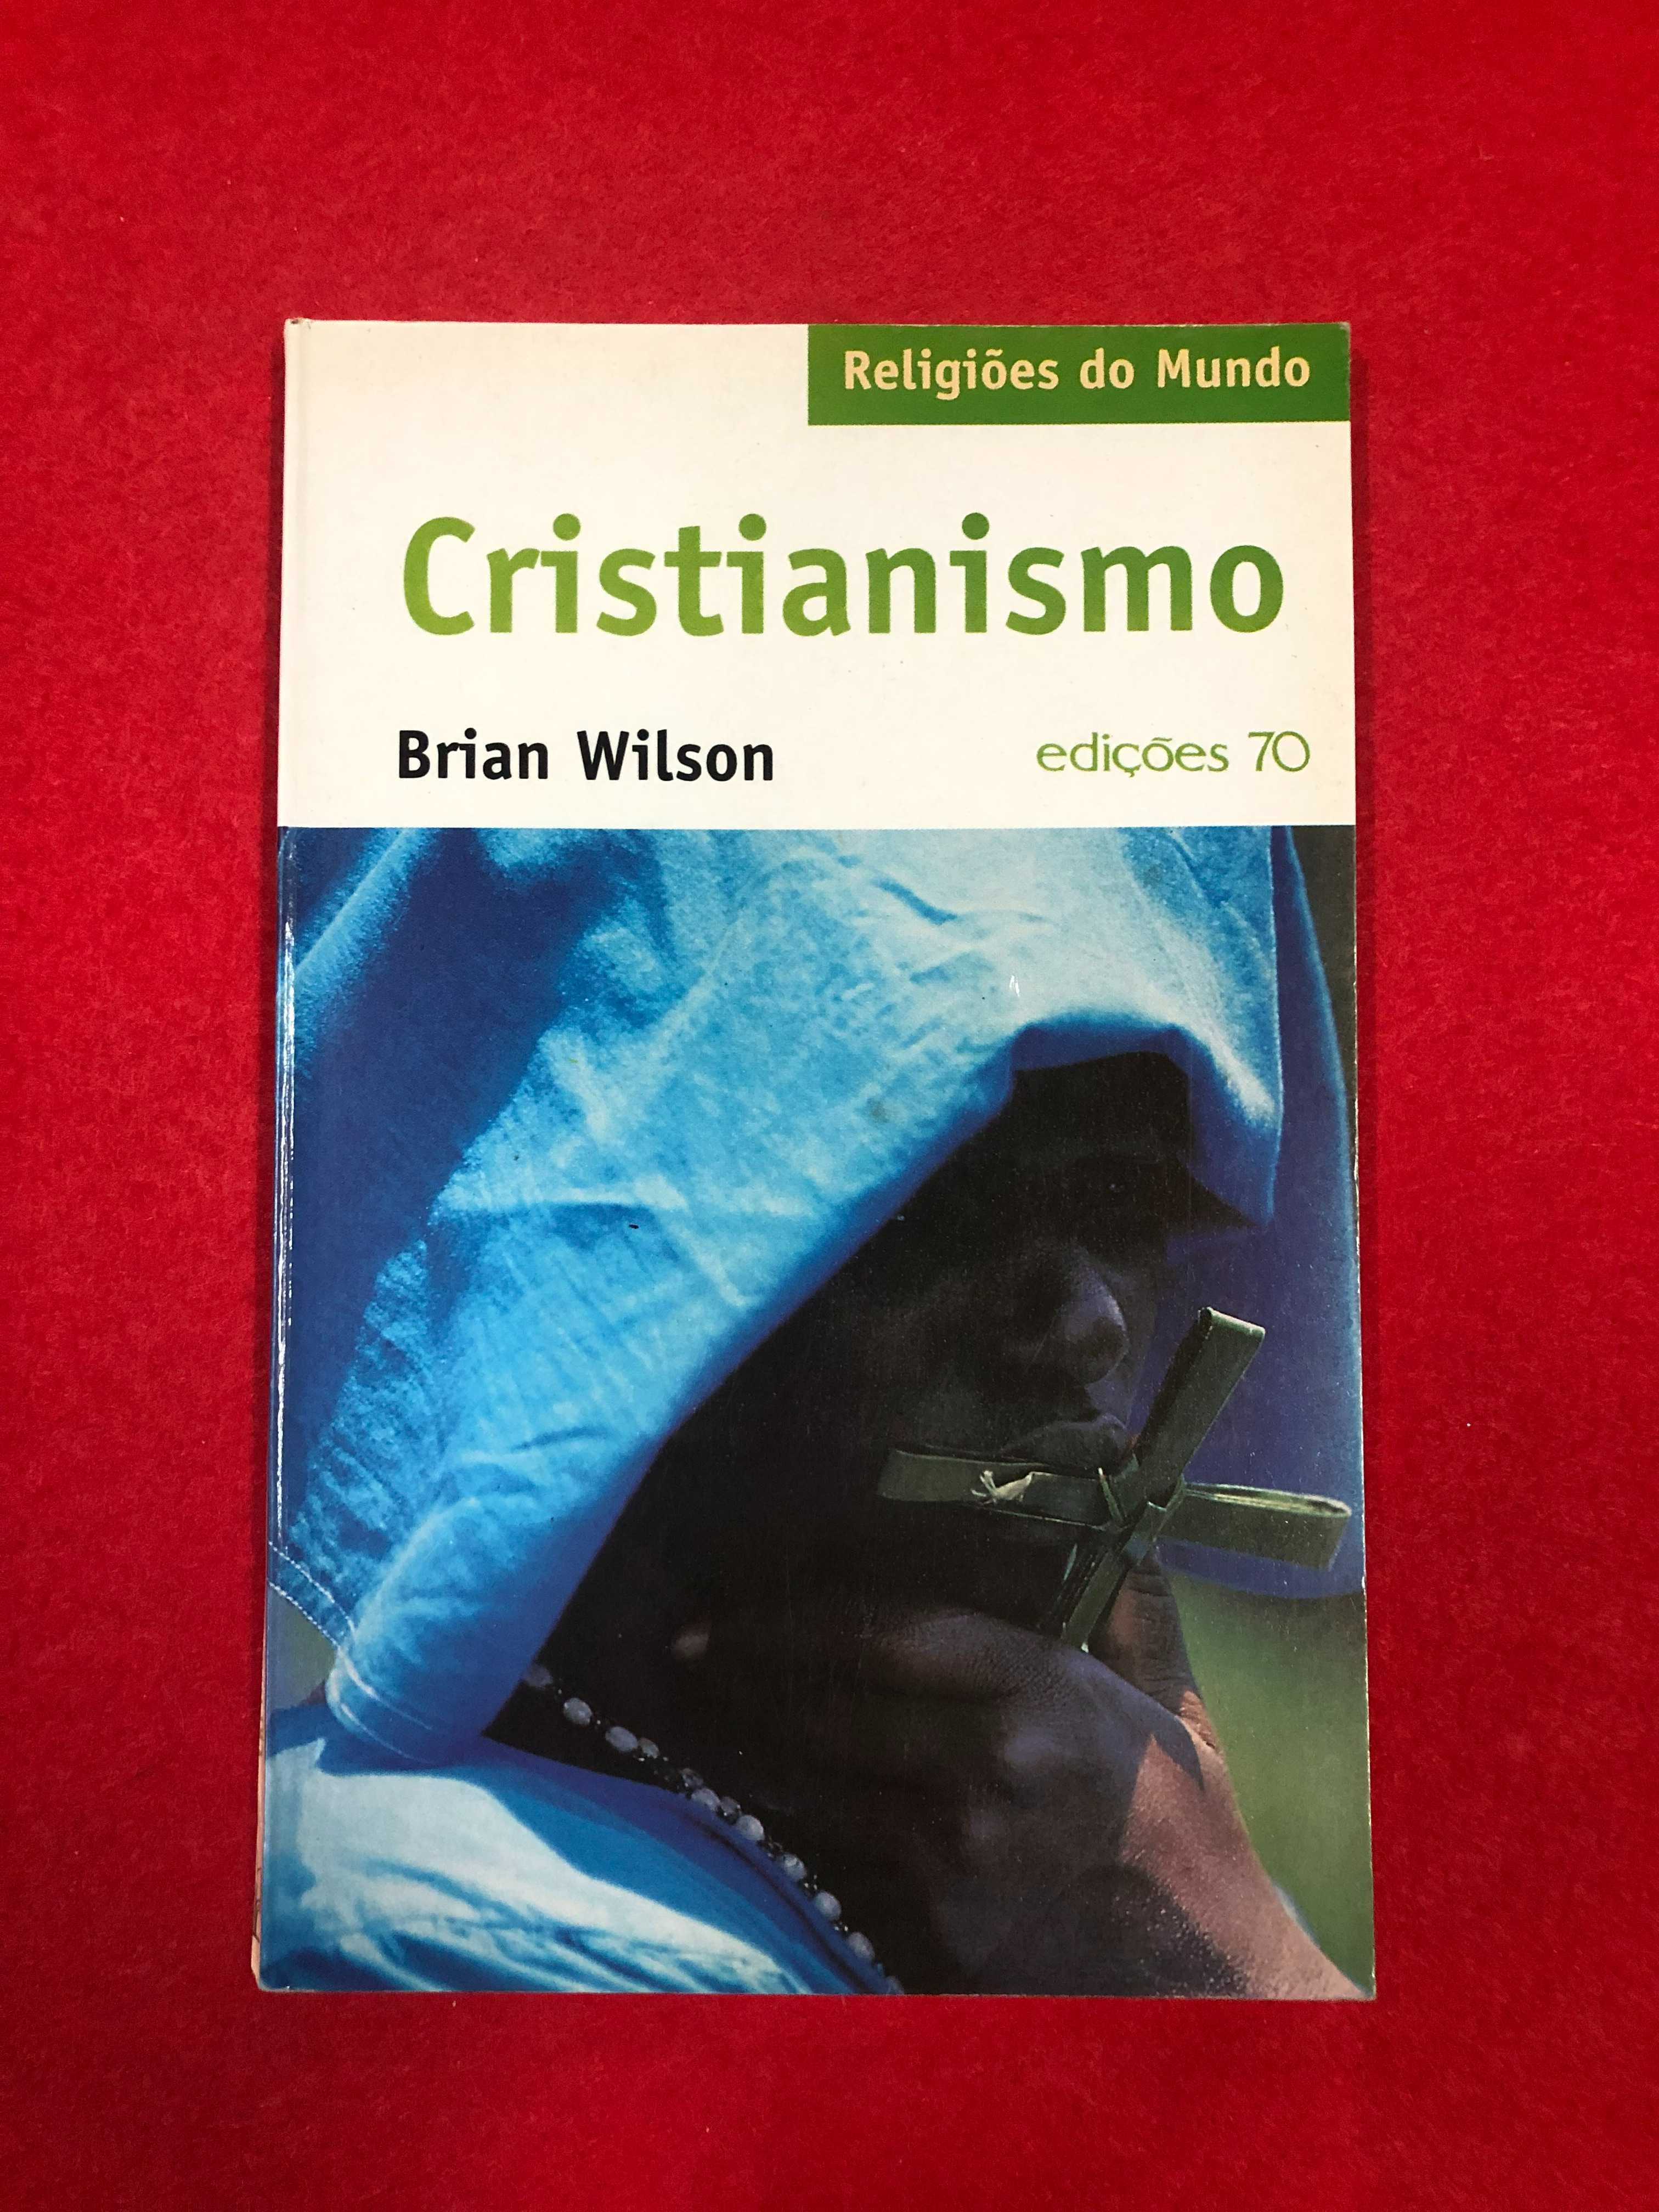 Cristianismo ( religiões do mundo) - Brian Wilson